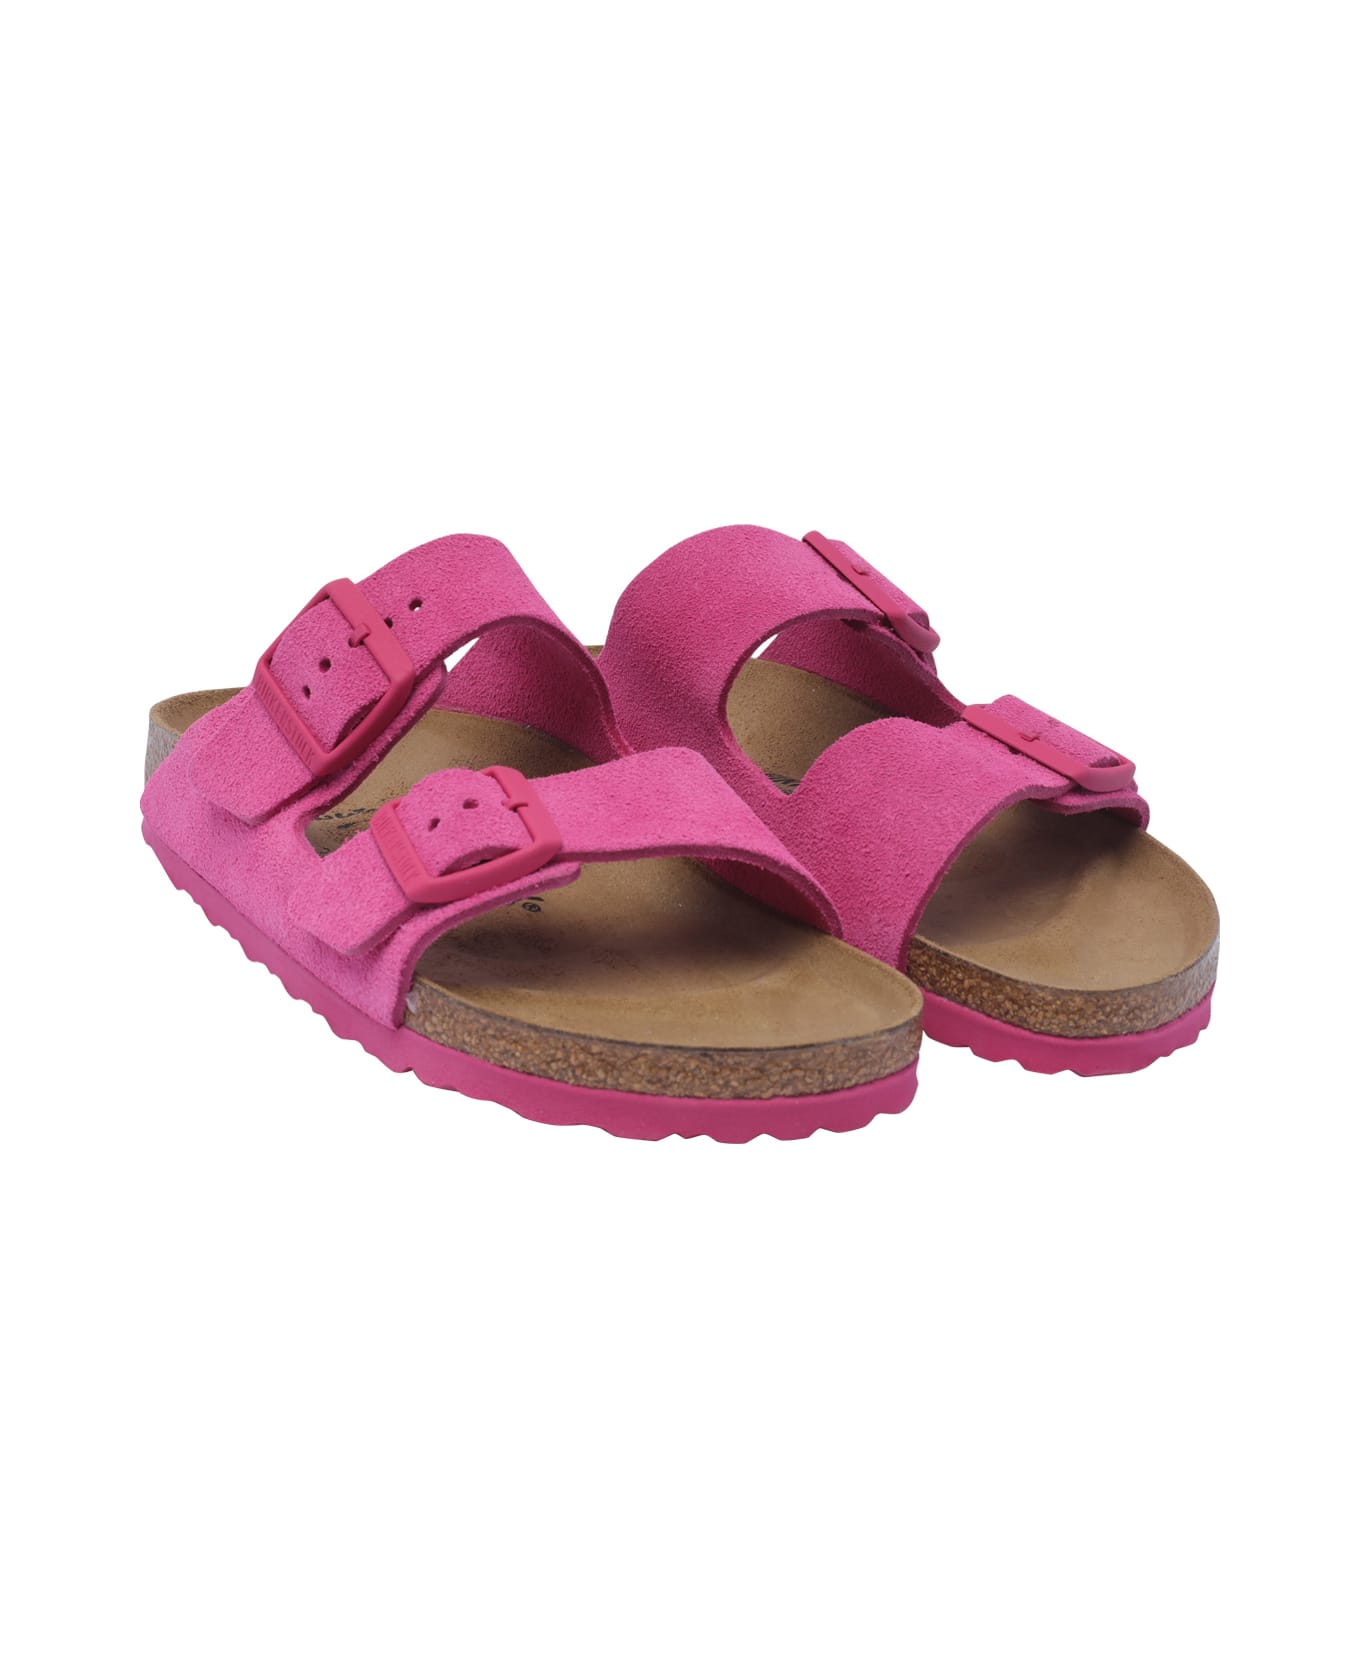 Birkenstock Arizona Sandals - Fuschia サンダル